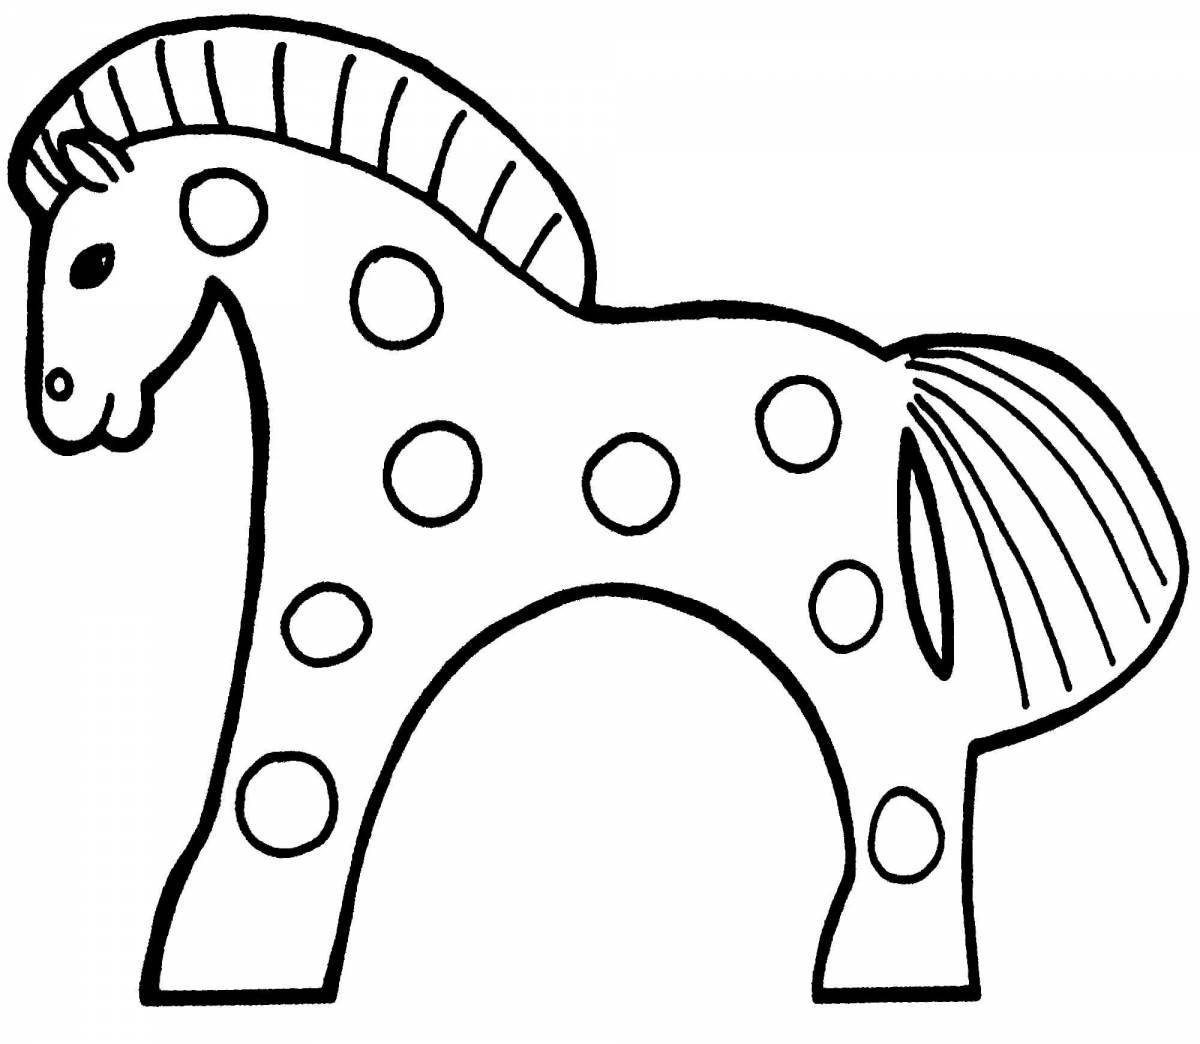 Специальная раскраска дымковской лошади для детей